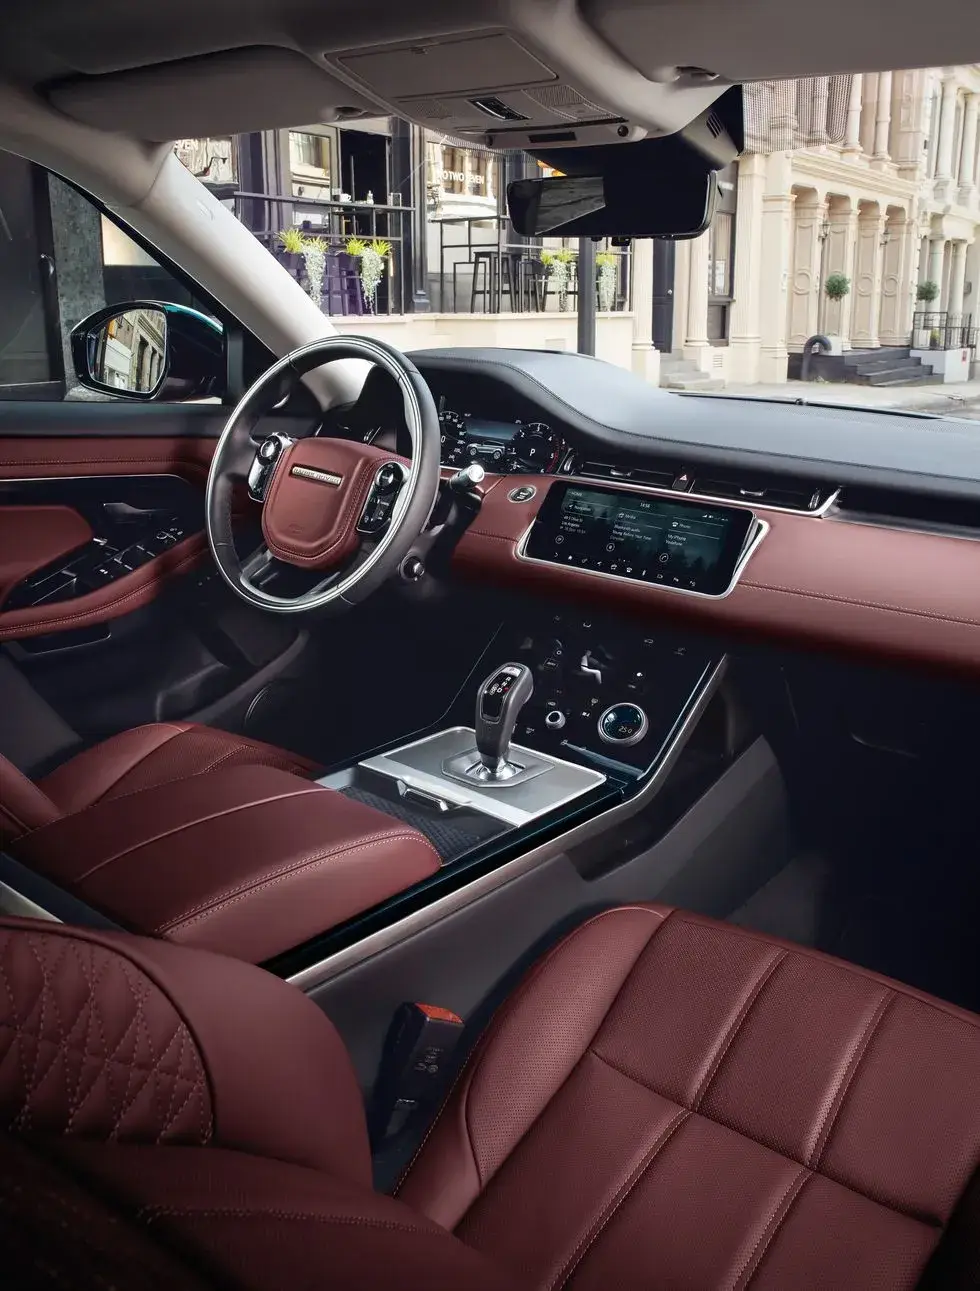 2022 Range Rover Evoque Front Seats

